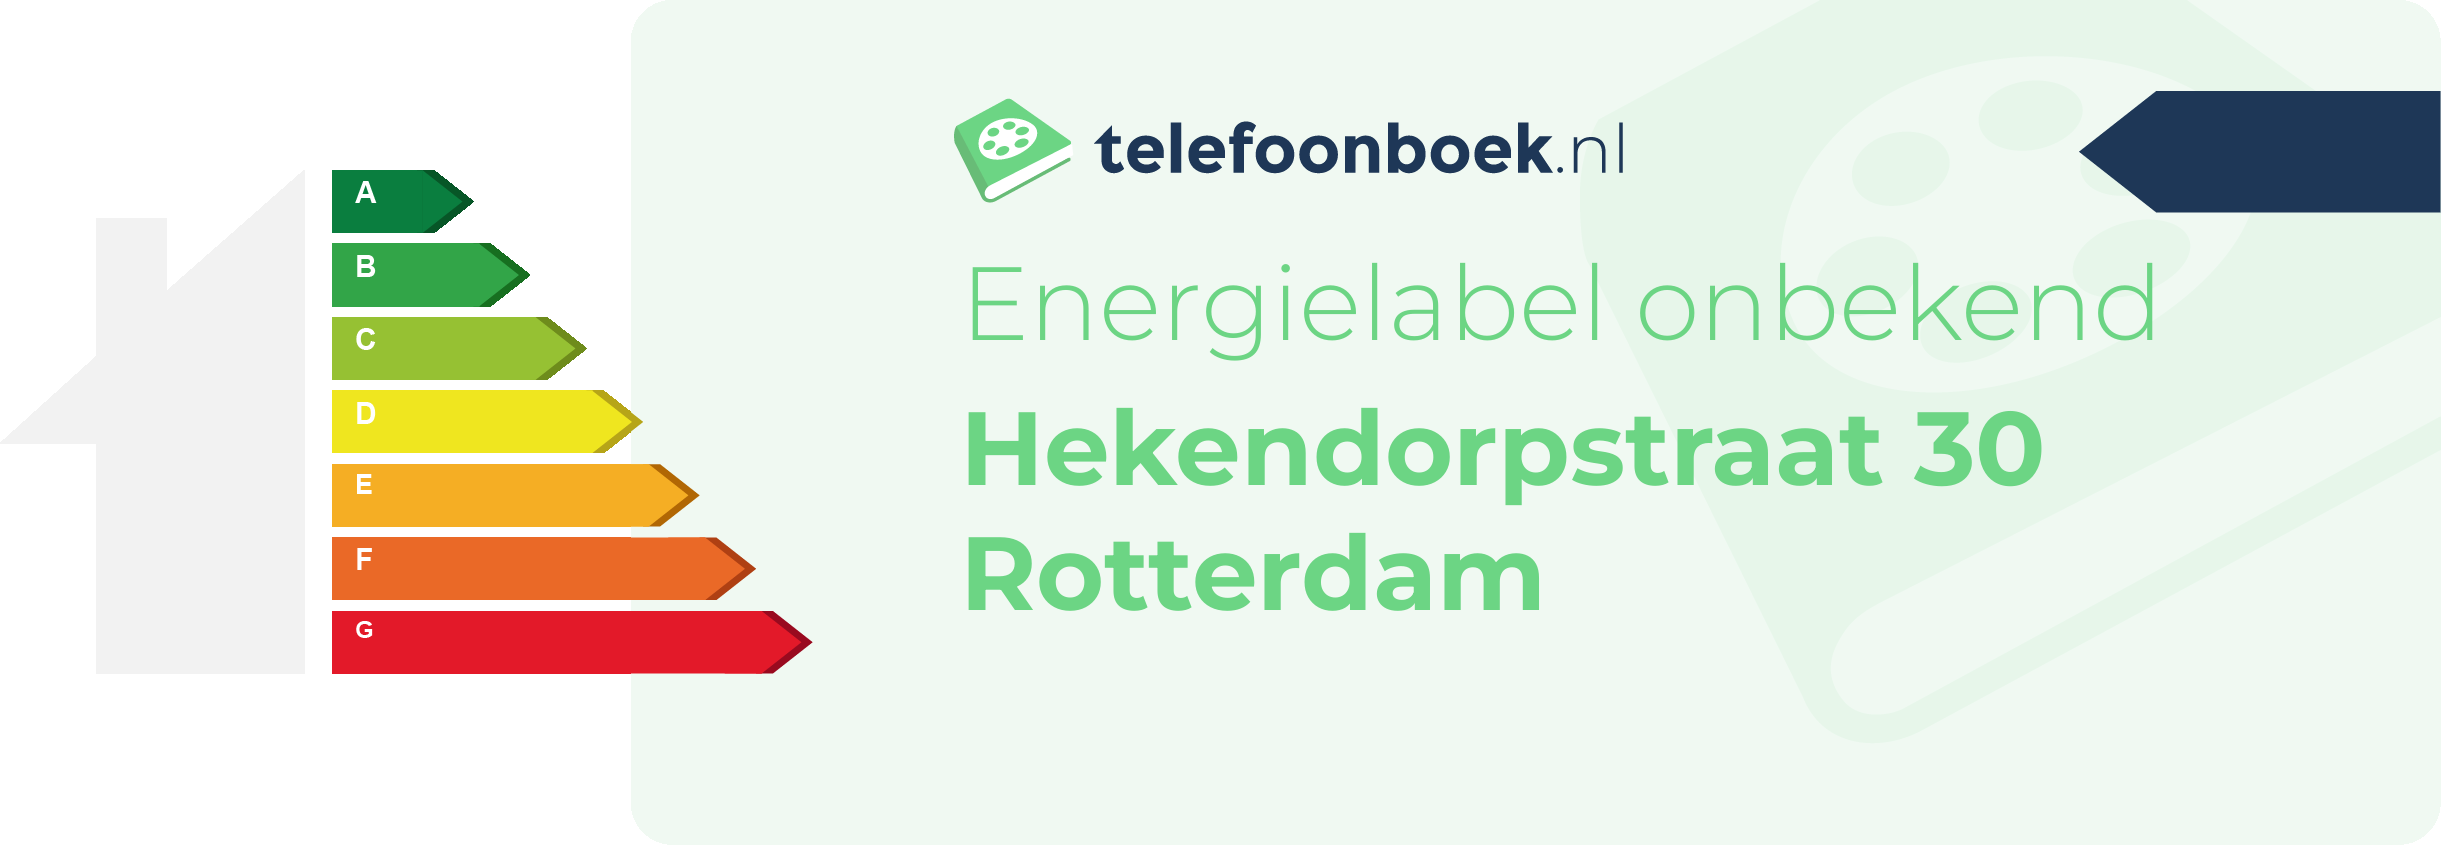 Energielabel Hekendorpstraat 30 Rotterdam